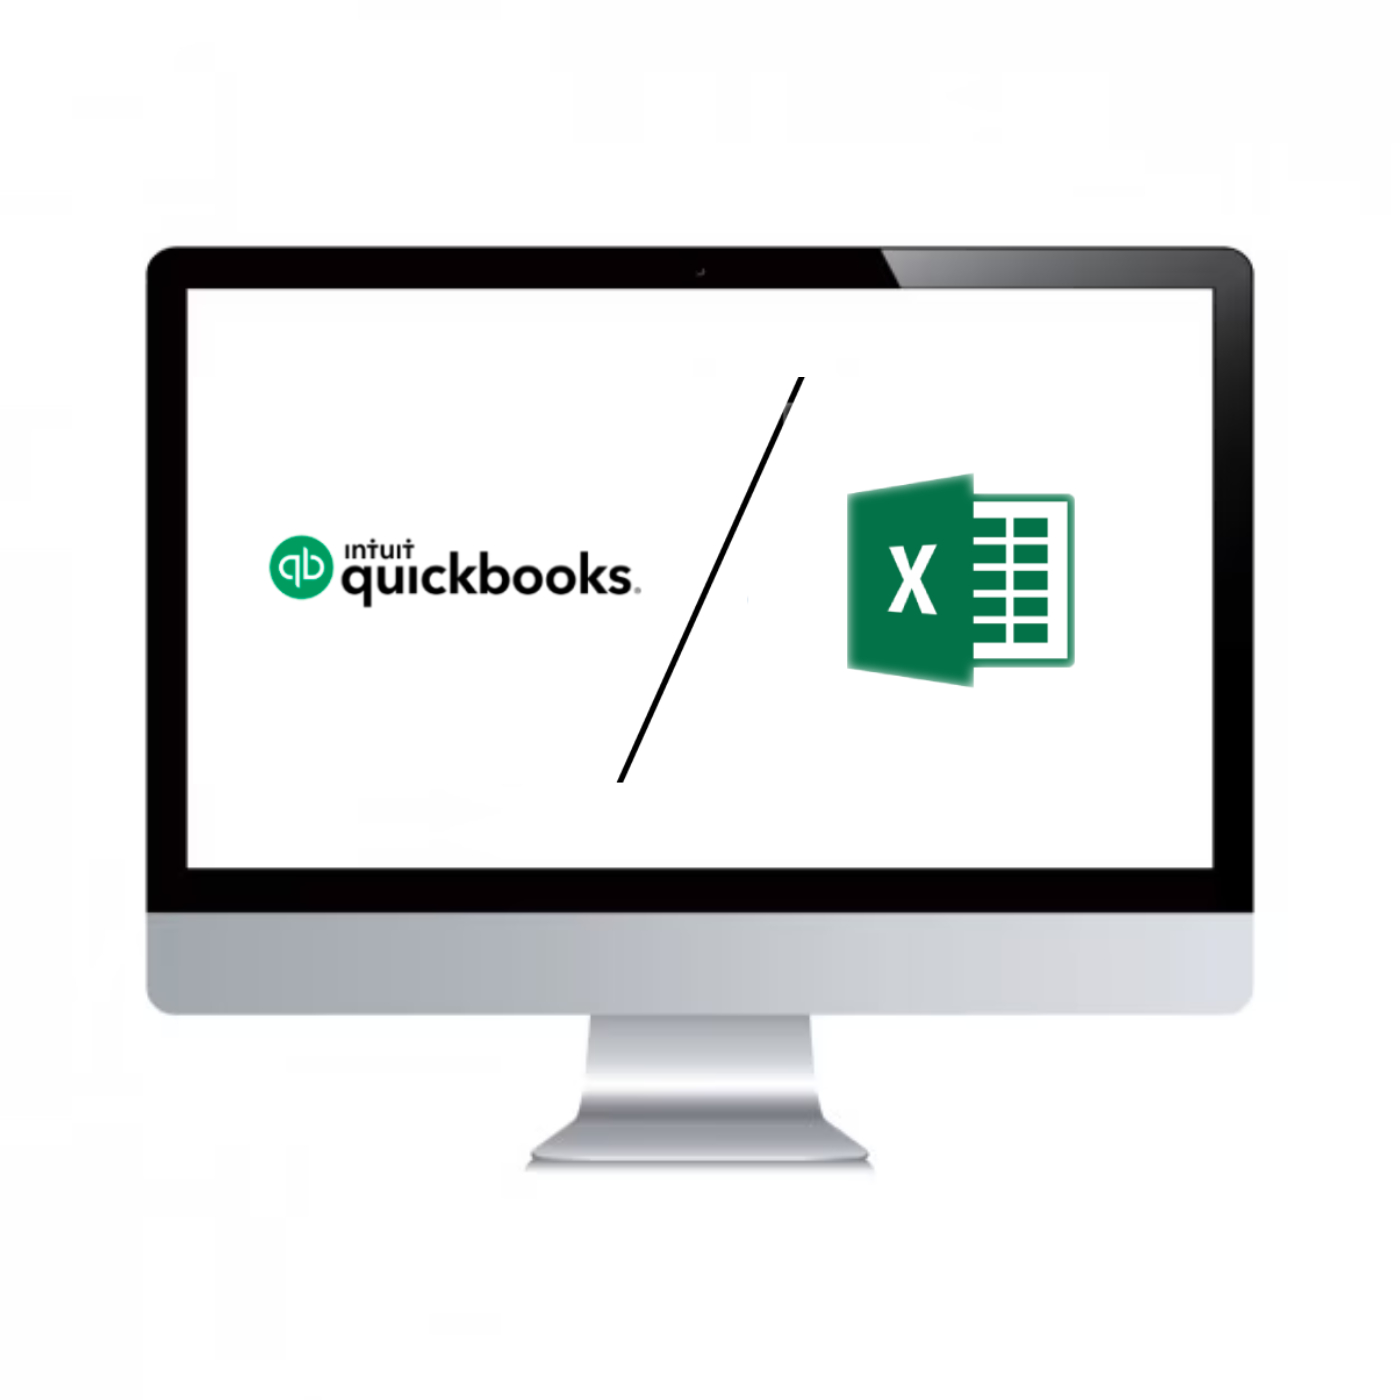 QuickBooks Vs Excel